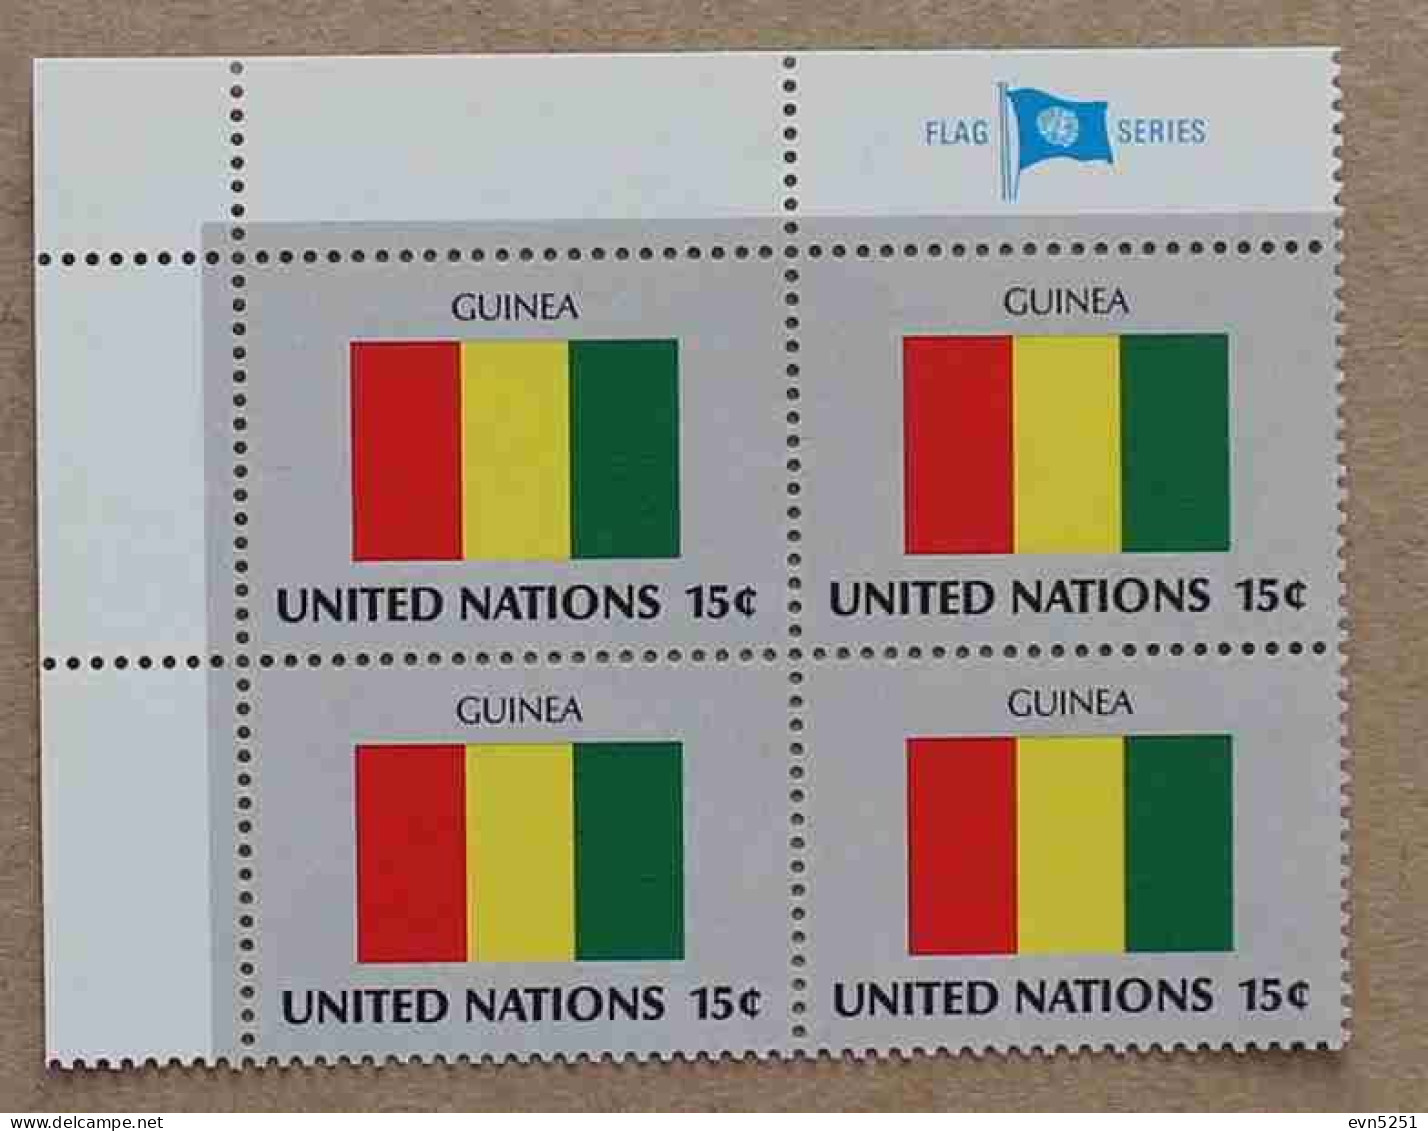 Ny80-01 : Nations-Unies (N-Y) - Drapeaux Des Etats Membres De L'ONU, Guinée Avec Une Vignette "FLAG SERIES" - Neufs